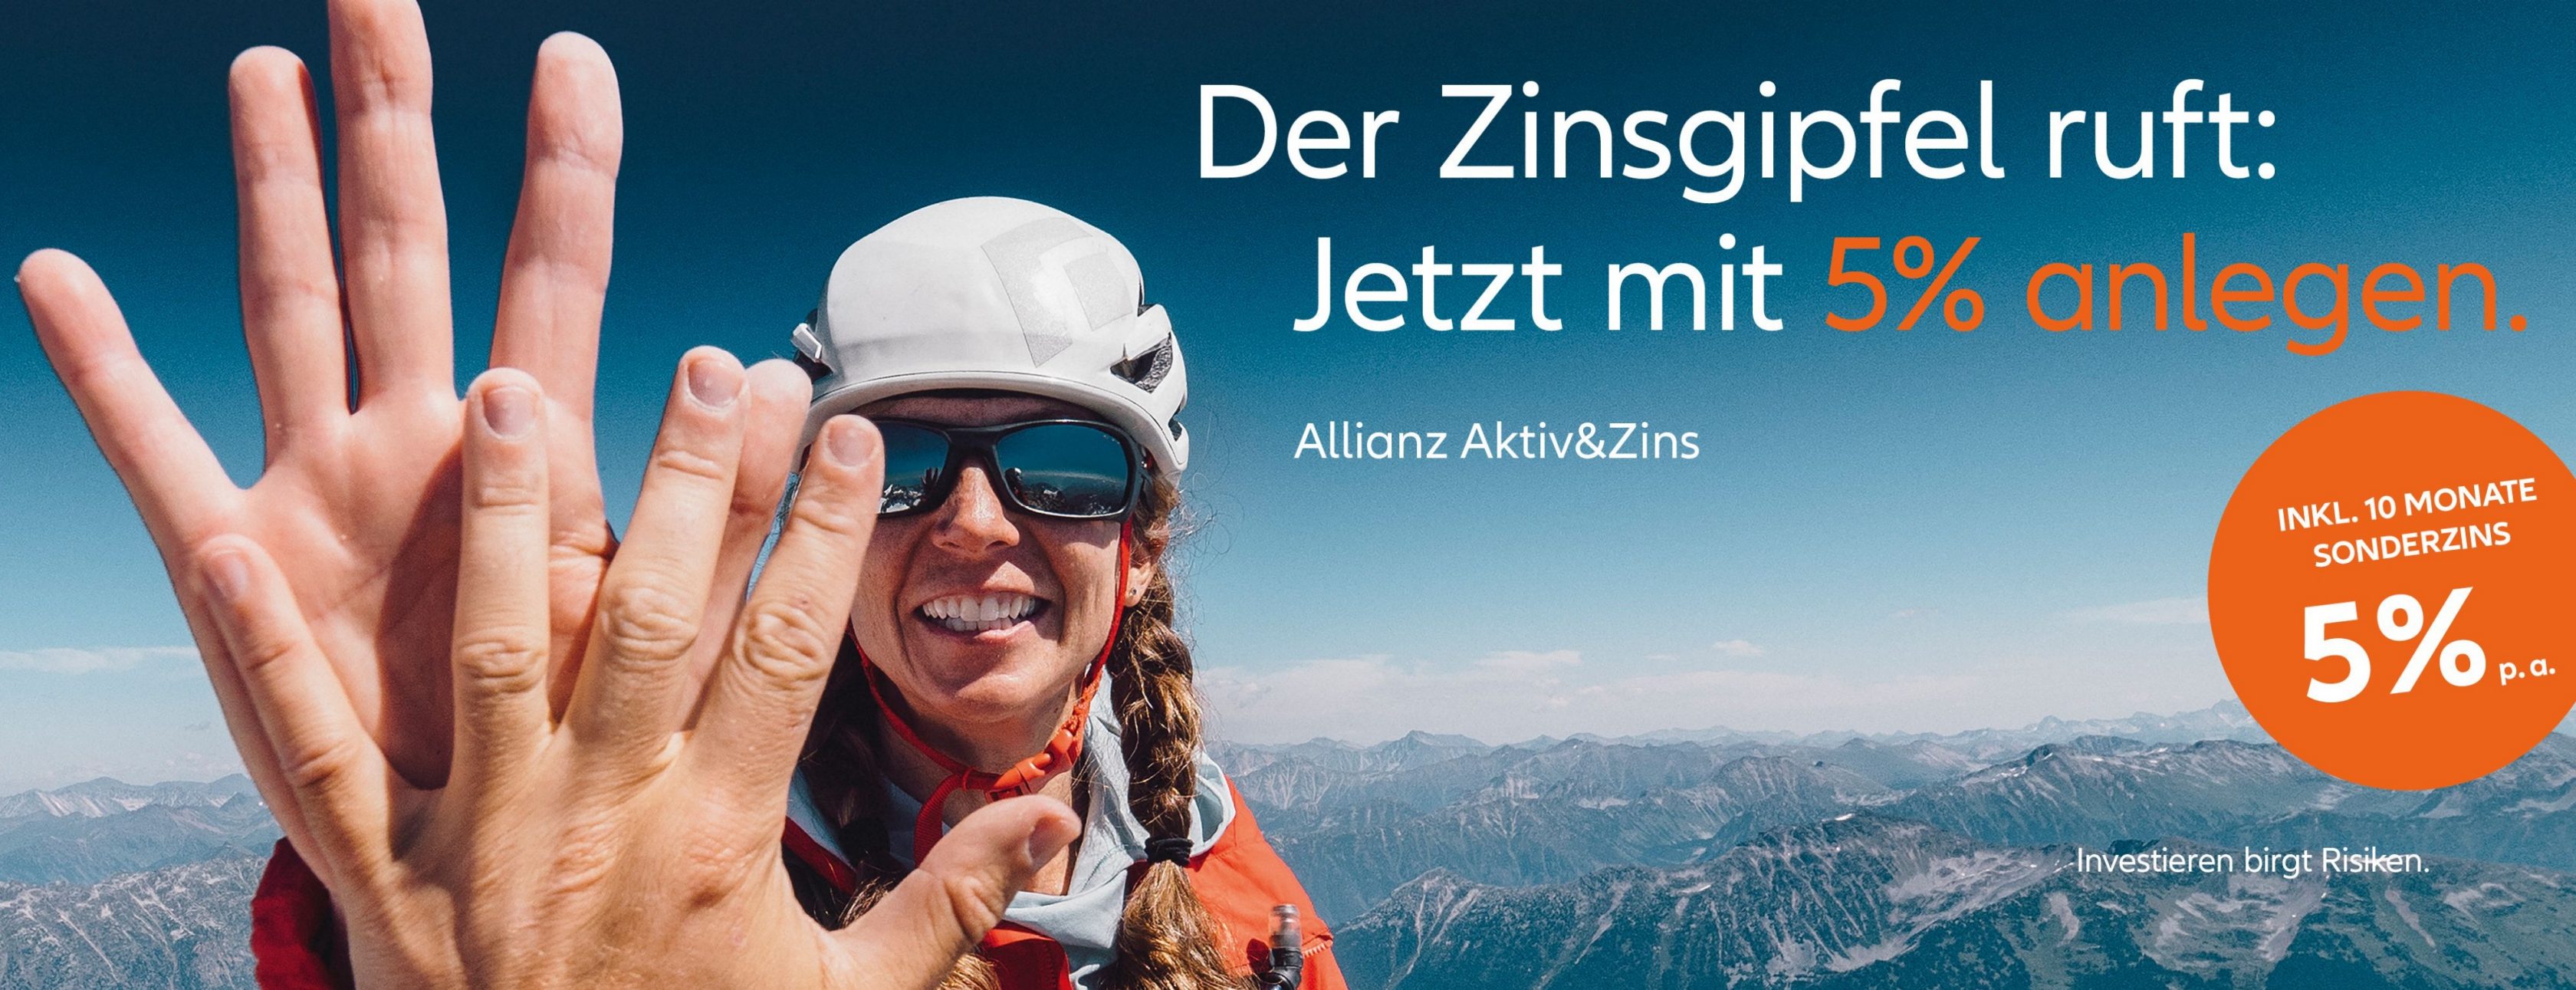 Allianz Versicherung Olaf Jentsch Pulsnitz - Zinsgipfel 5% Zins